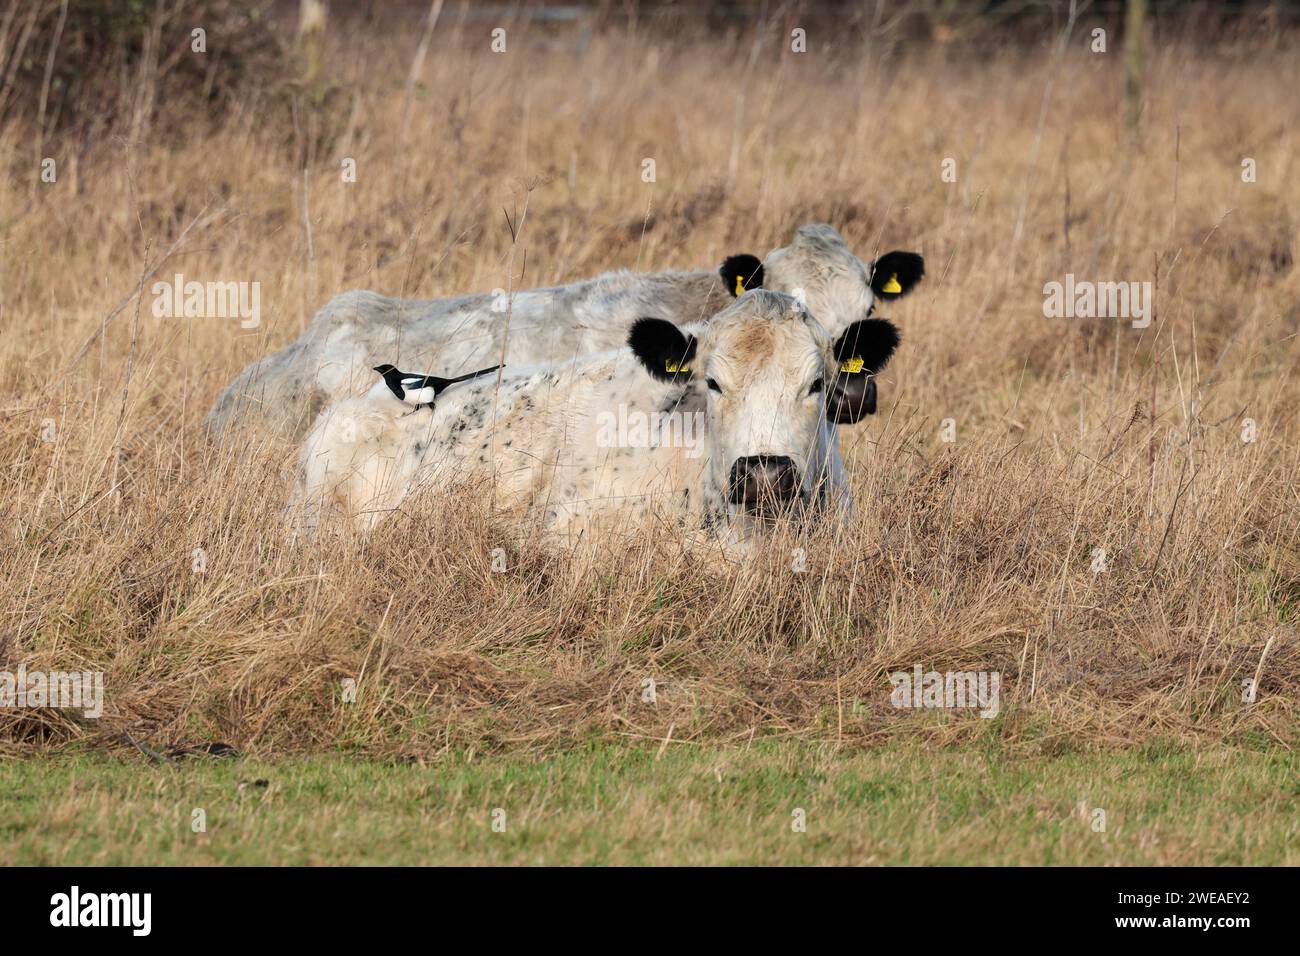 Les bovins blancs britanniques sans corne attirent le pic de boeuf britannique le pica pica pica, la végétation sèche de la saison hivernale litière pour les bovins au repos soignés par la pie Banque D'Images